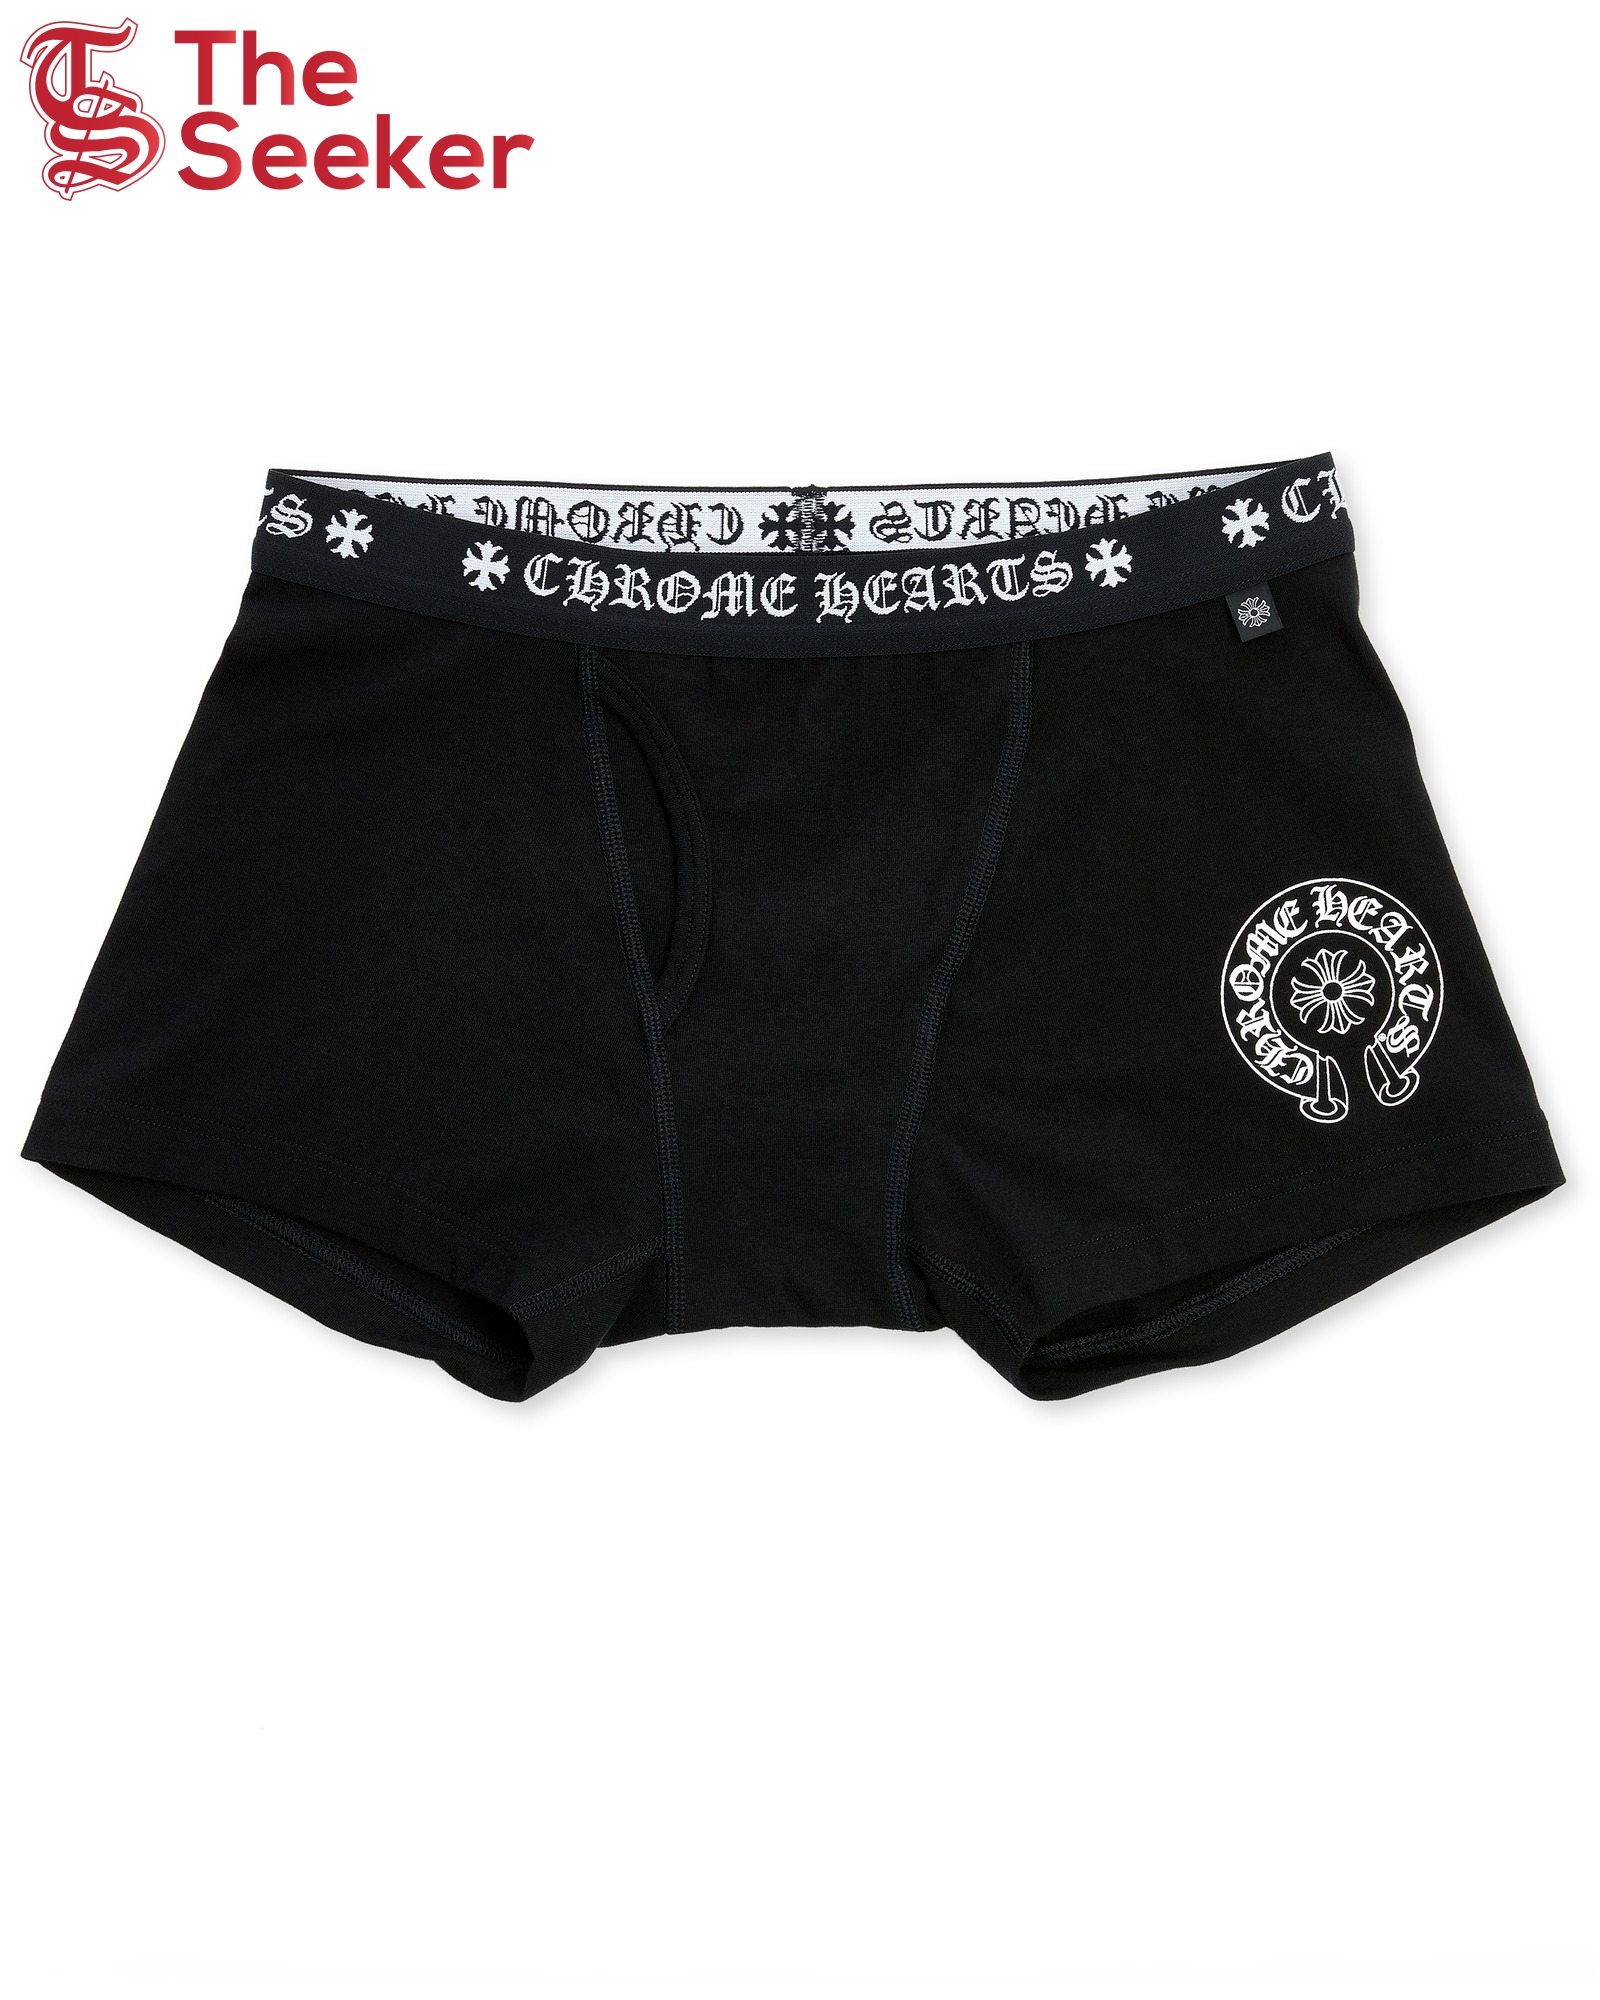 Chrome Hearts Boxer Brief Shorts Black/White